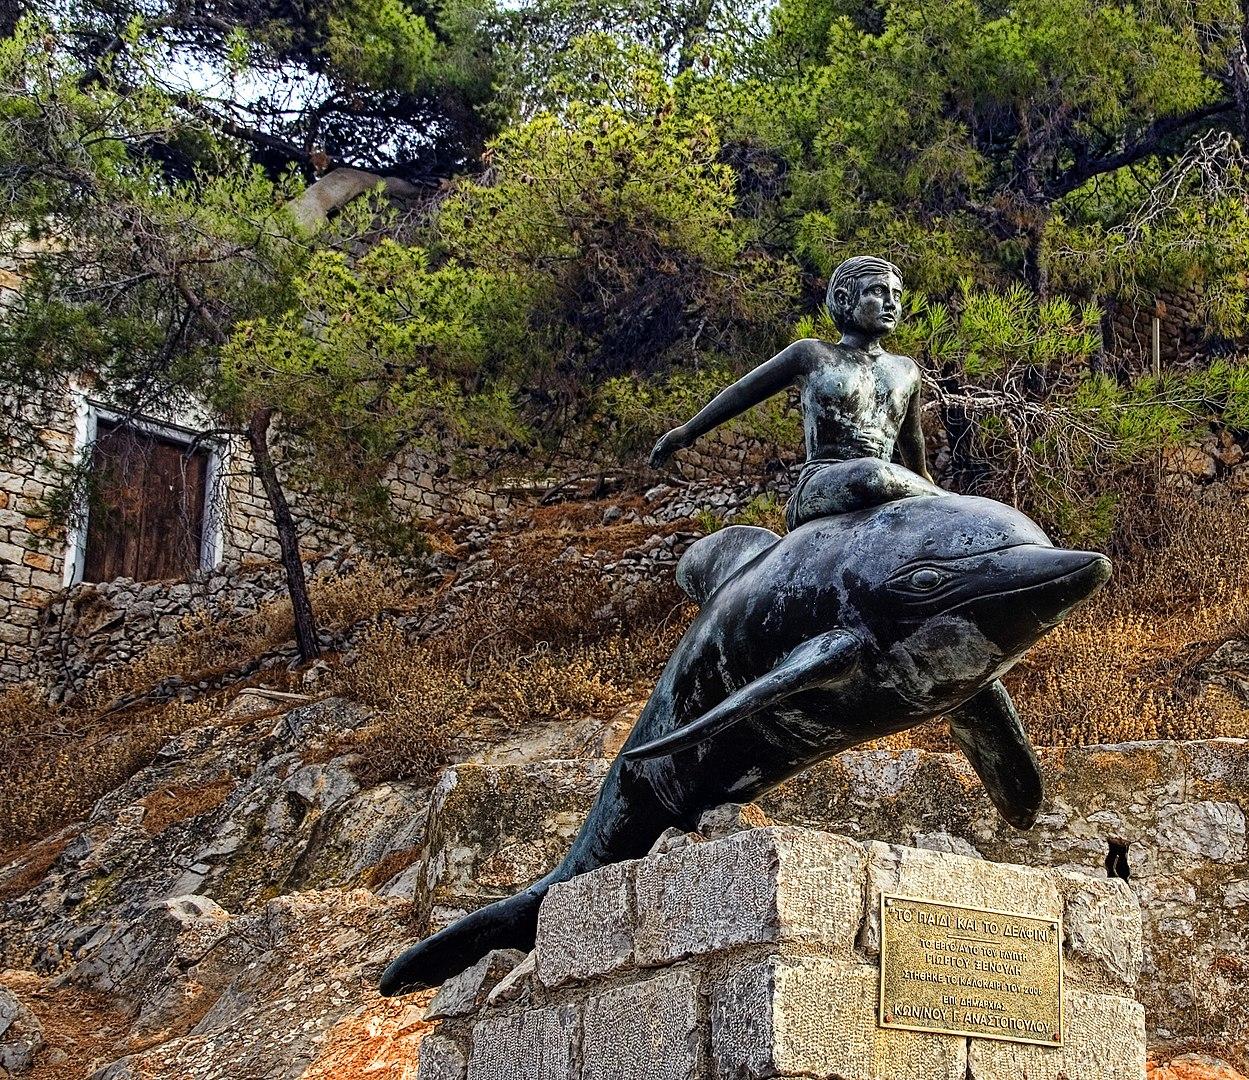 Мальчик на дельфине, скульптура, установленная в 2006 году на Идре и посвящённая одноимённому фильму